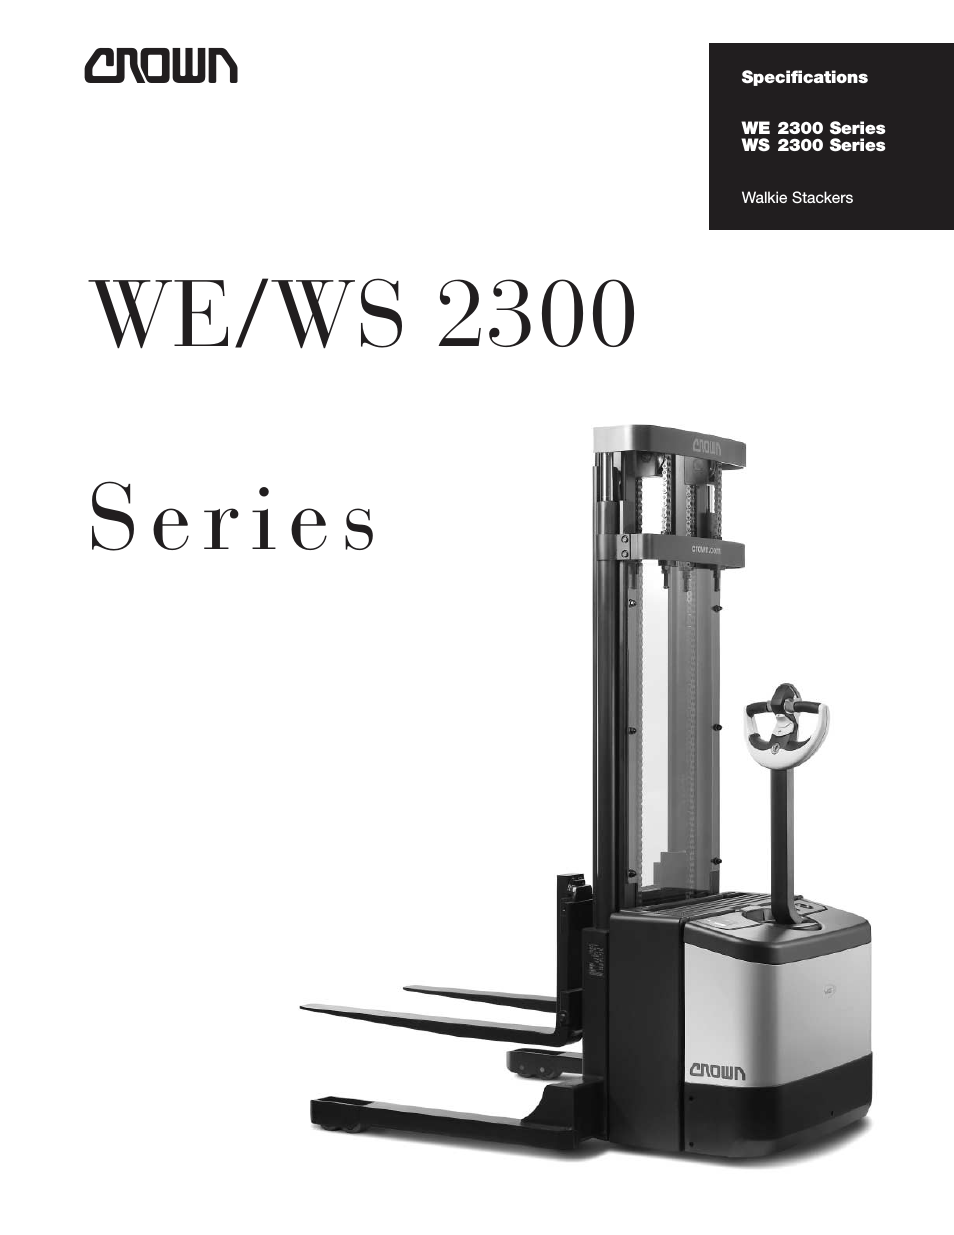 Walkie Stackers WS 2300 Series